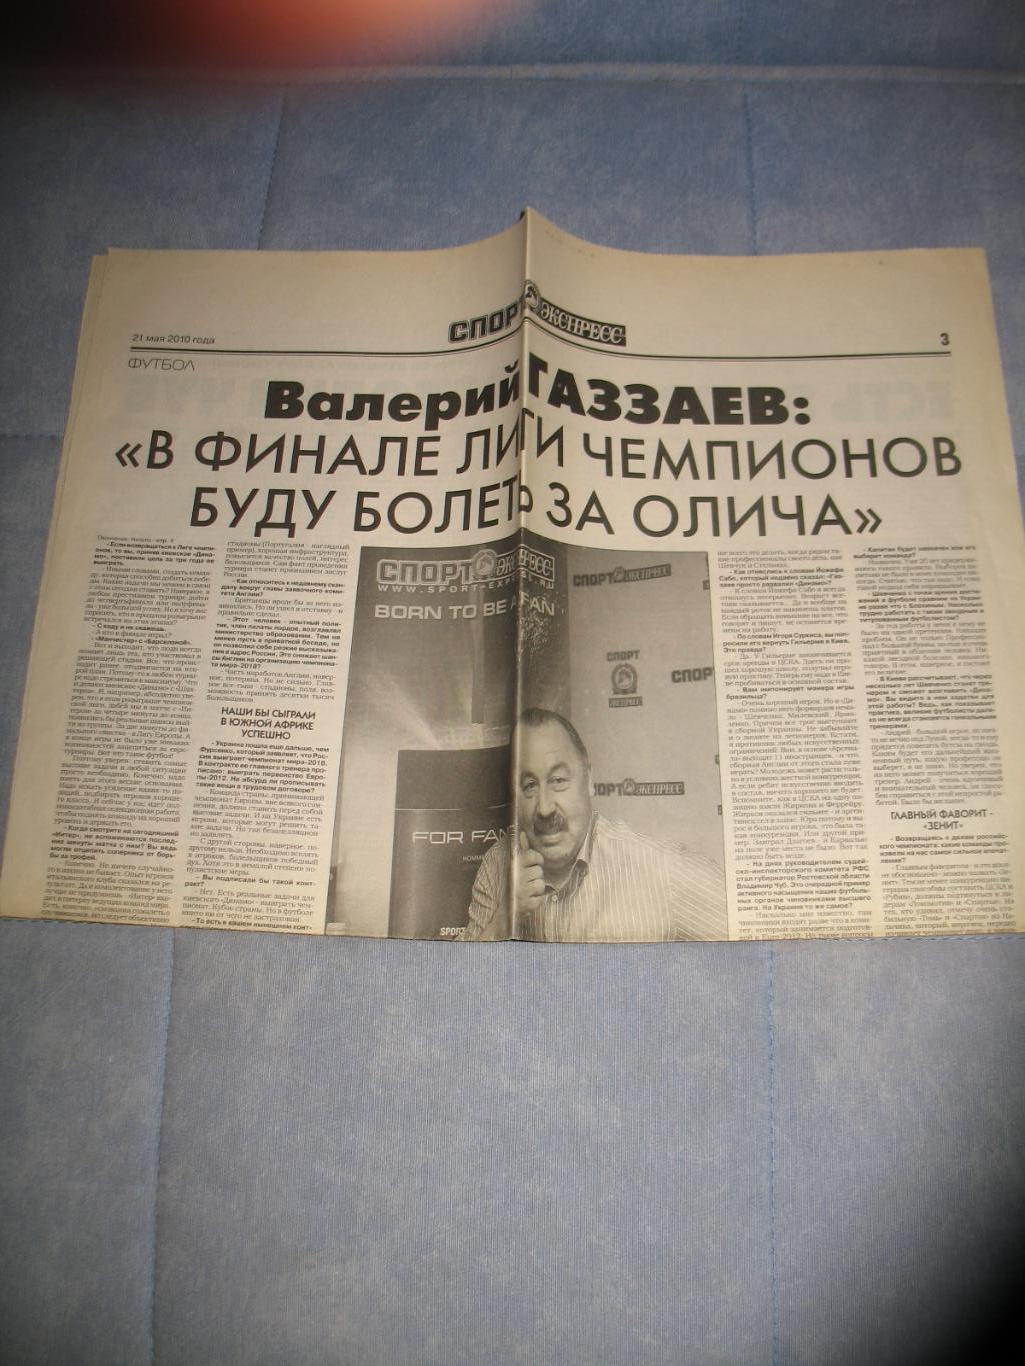 Валерий Газзаев. Разворот газеты Спорт-Экспресс 21.05.2010 г.